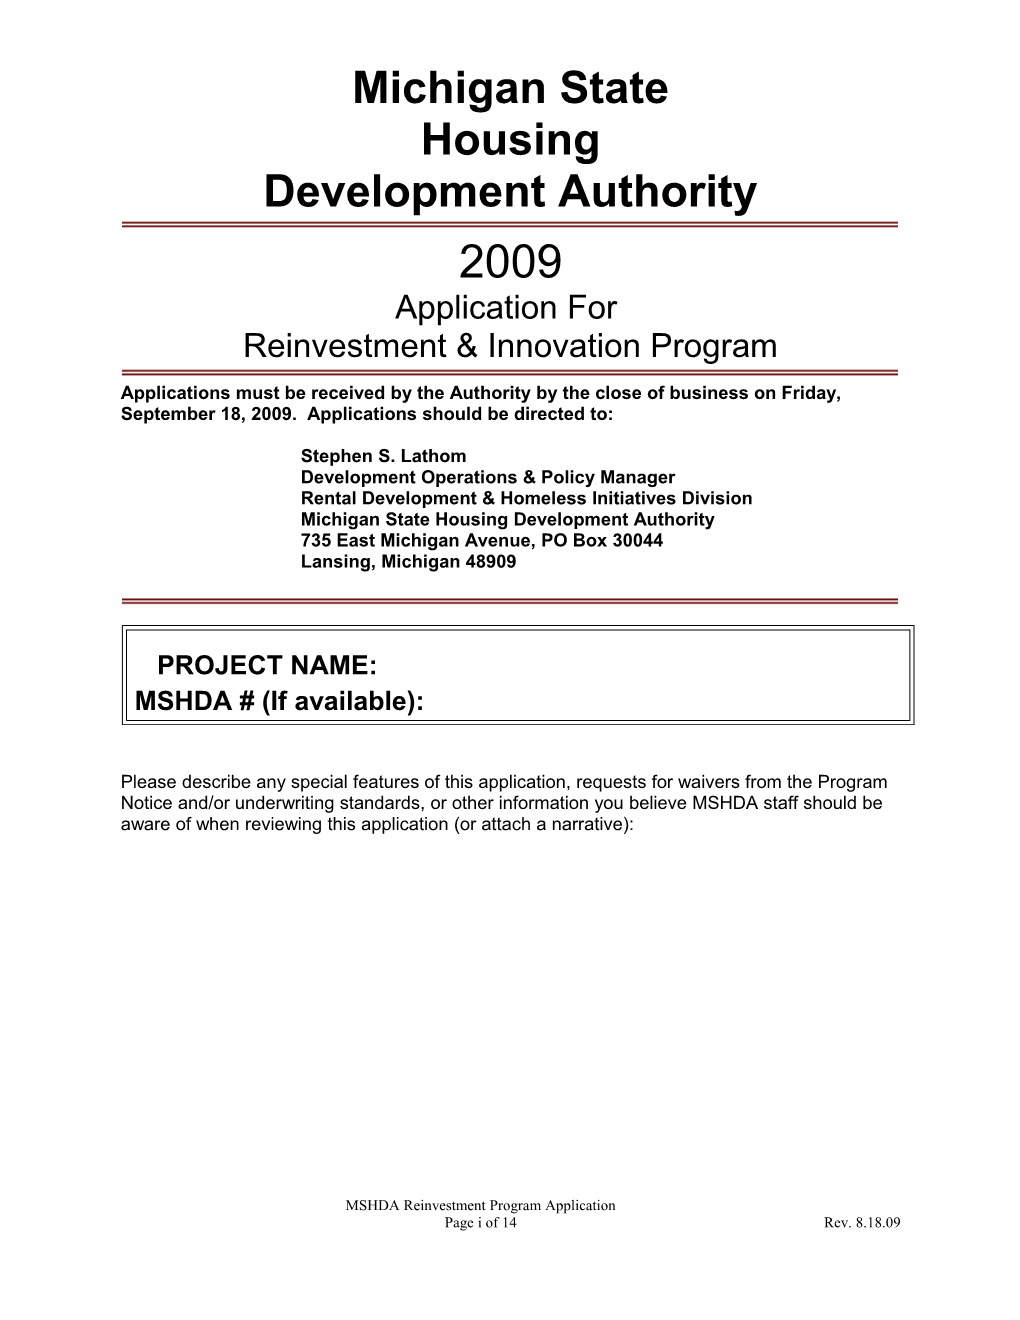 Development Authority